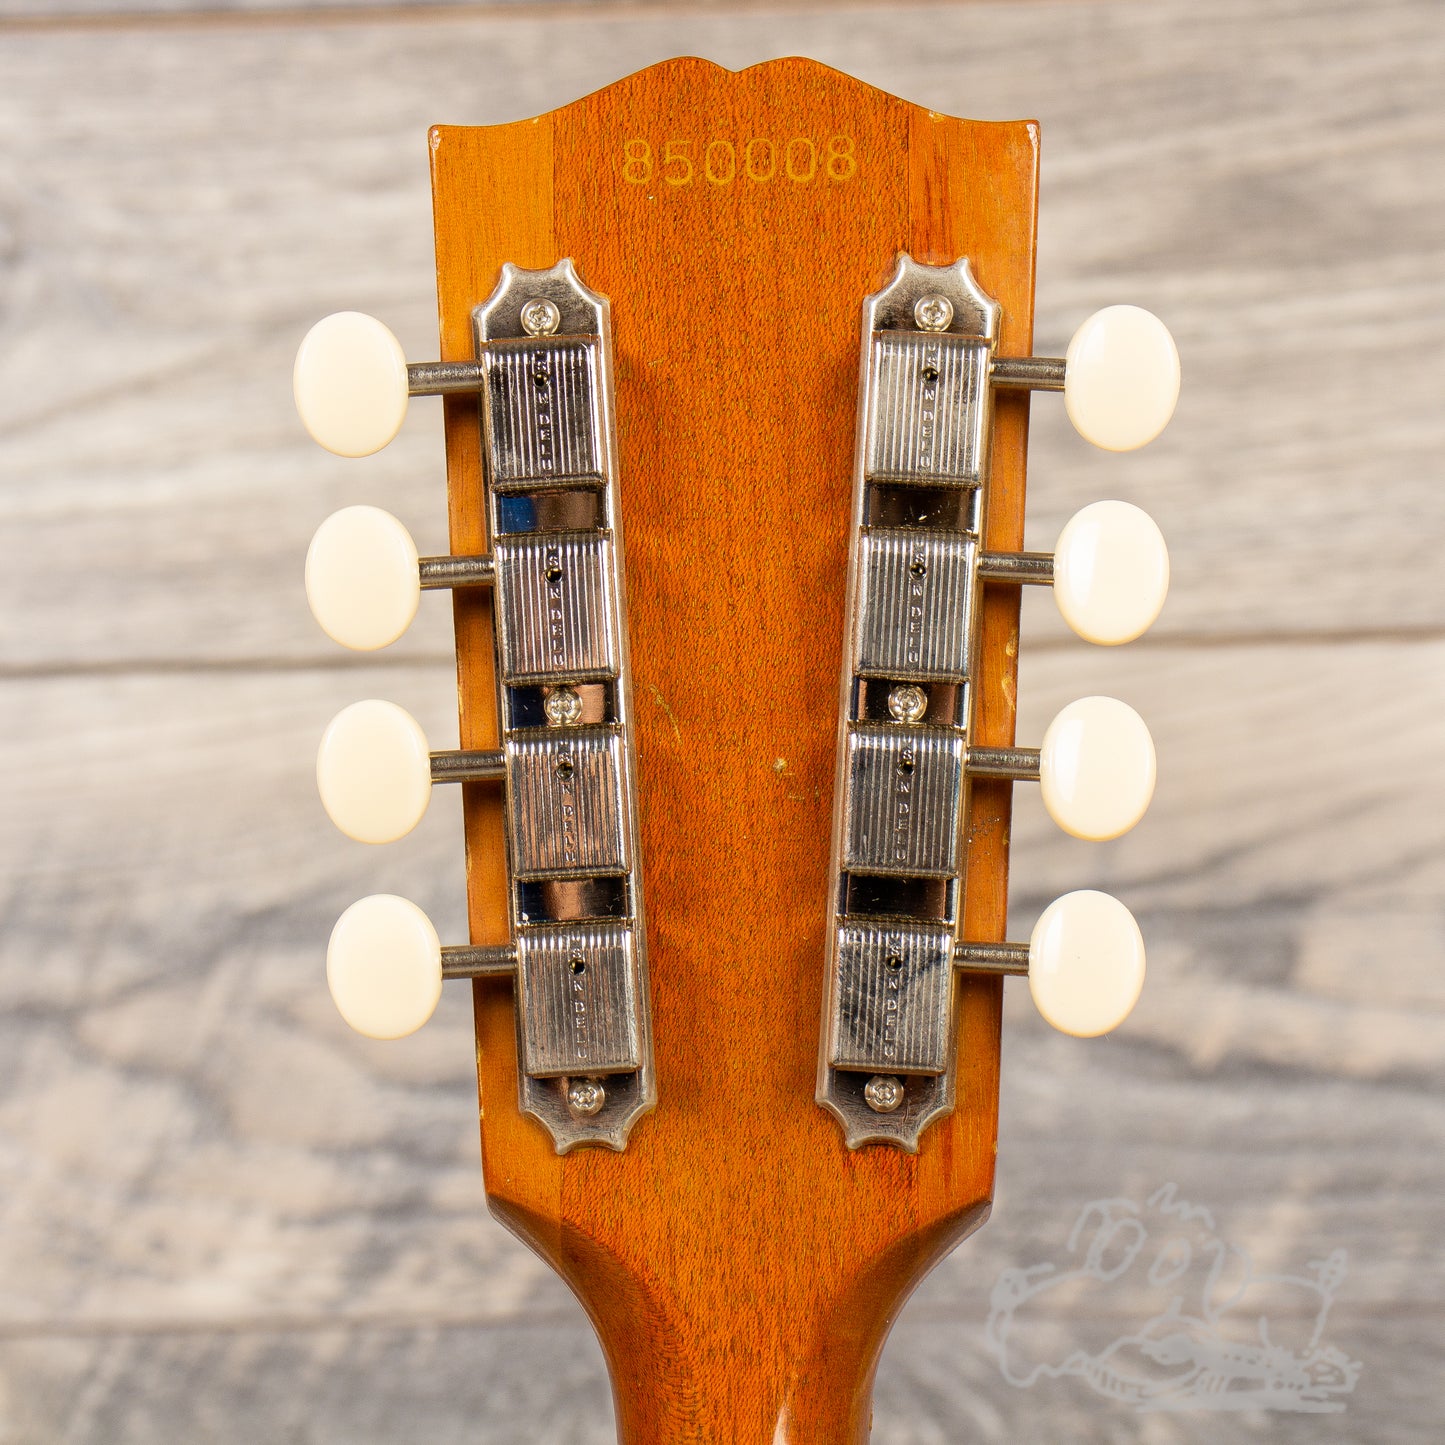 1968 Gibson A40 Mandolin